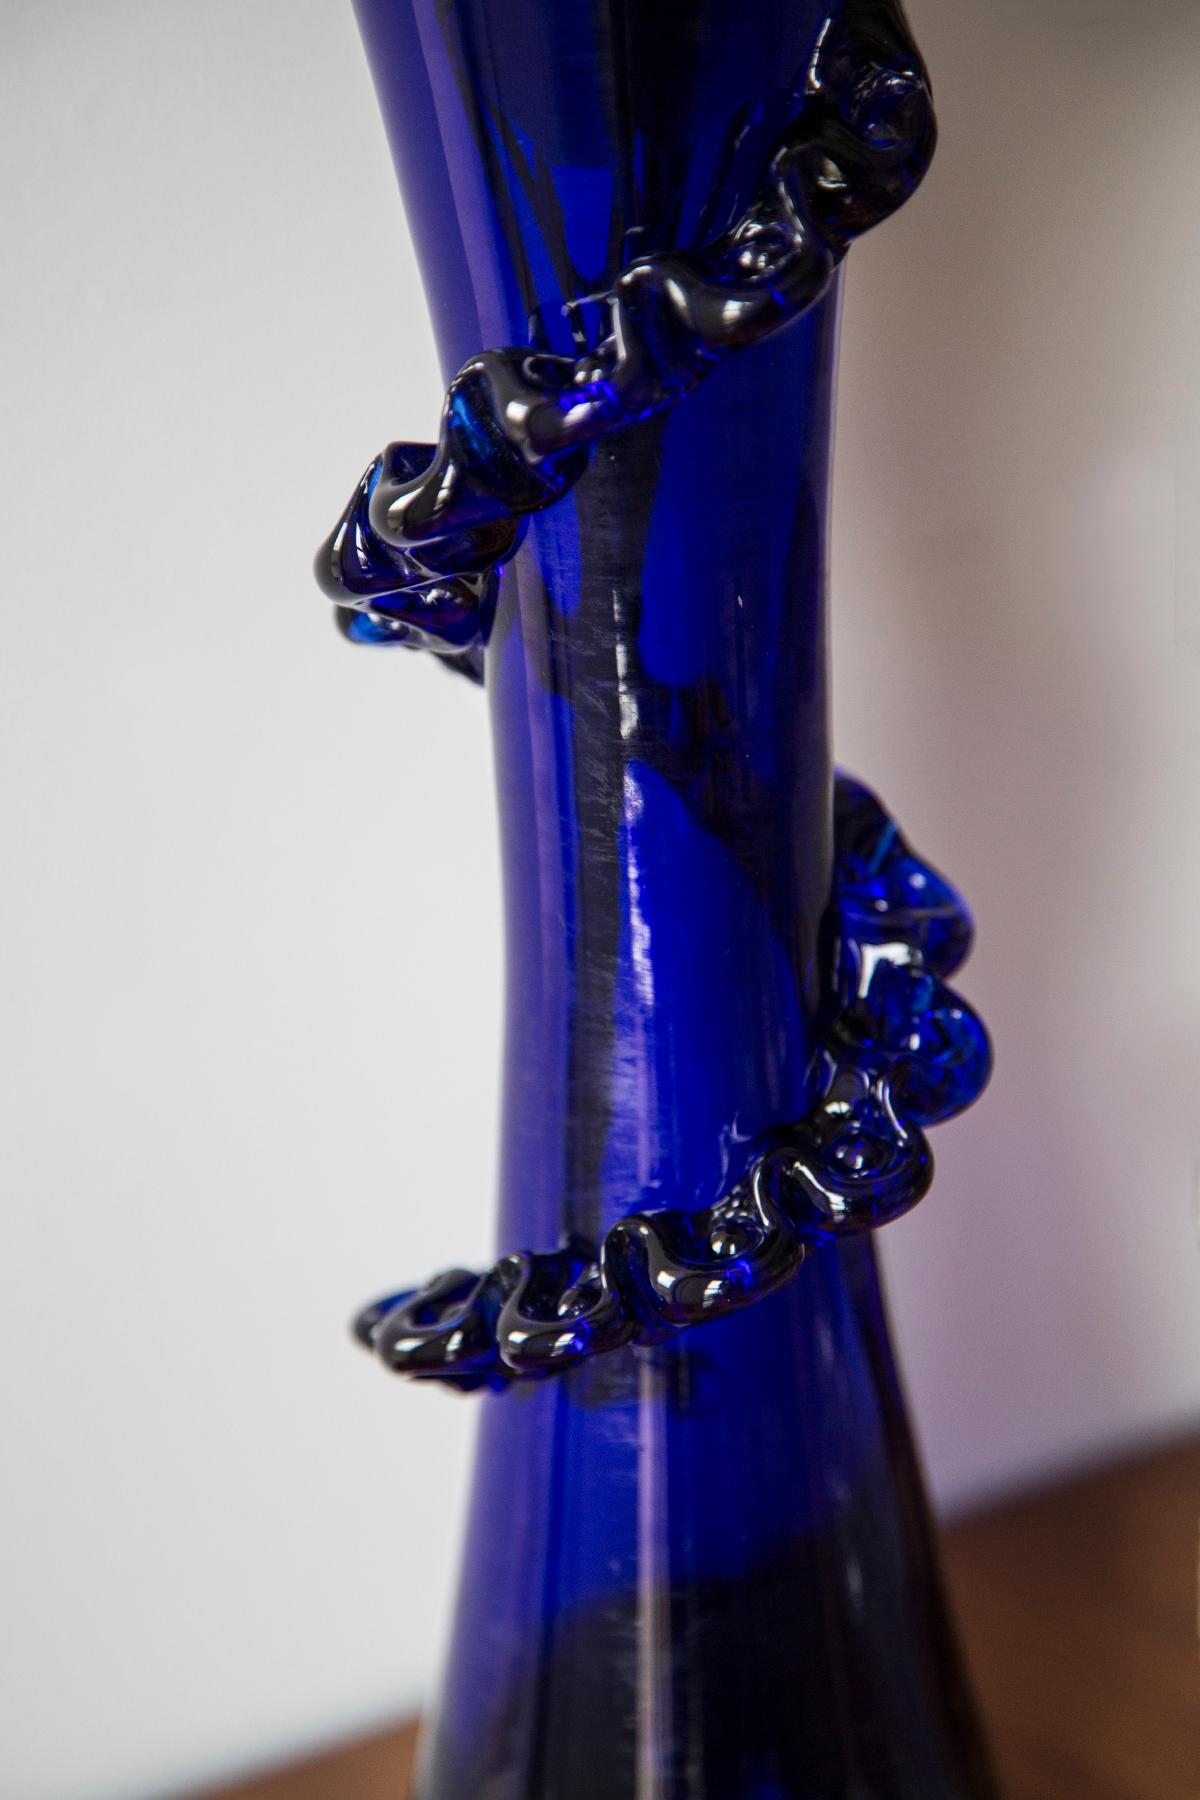 Blaue Vase in erstaunlich organischer Form. Produziert in den 1960er Jahren.
Glas in perfektem Zustand. Die Vase sieht aus, als wäre sie gerade erst aus der Schachtel genommen worden.

Deffekt auf dem Glas - Produktion ein, überprüfen Sie bitte